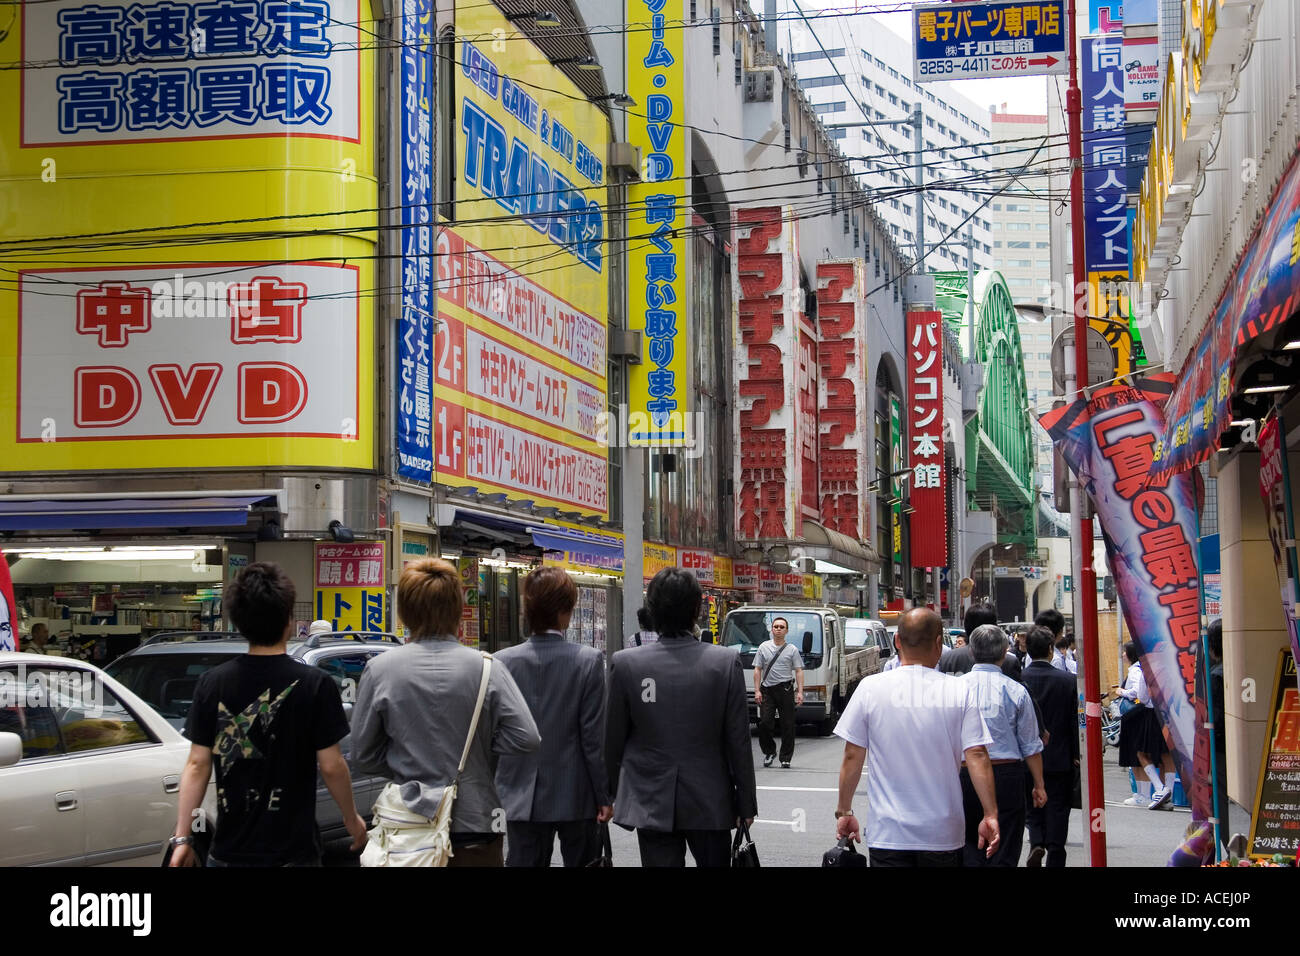 Les gens dans la rue dans l'électronique d'Akihabara district de Tokyo Japon avec de nombreux signes de la publicité des magasins de l'électronique Banque D'Images